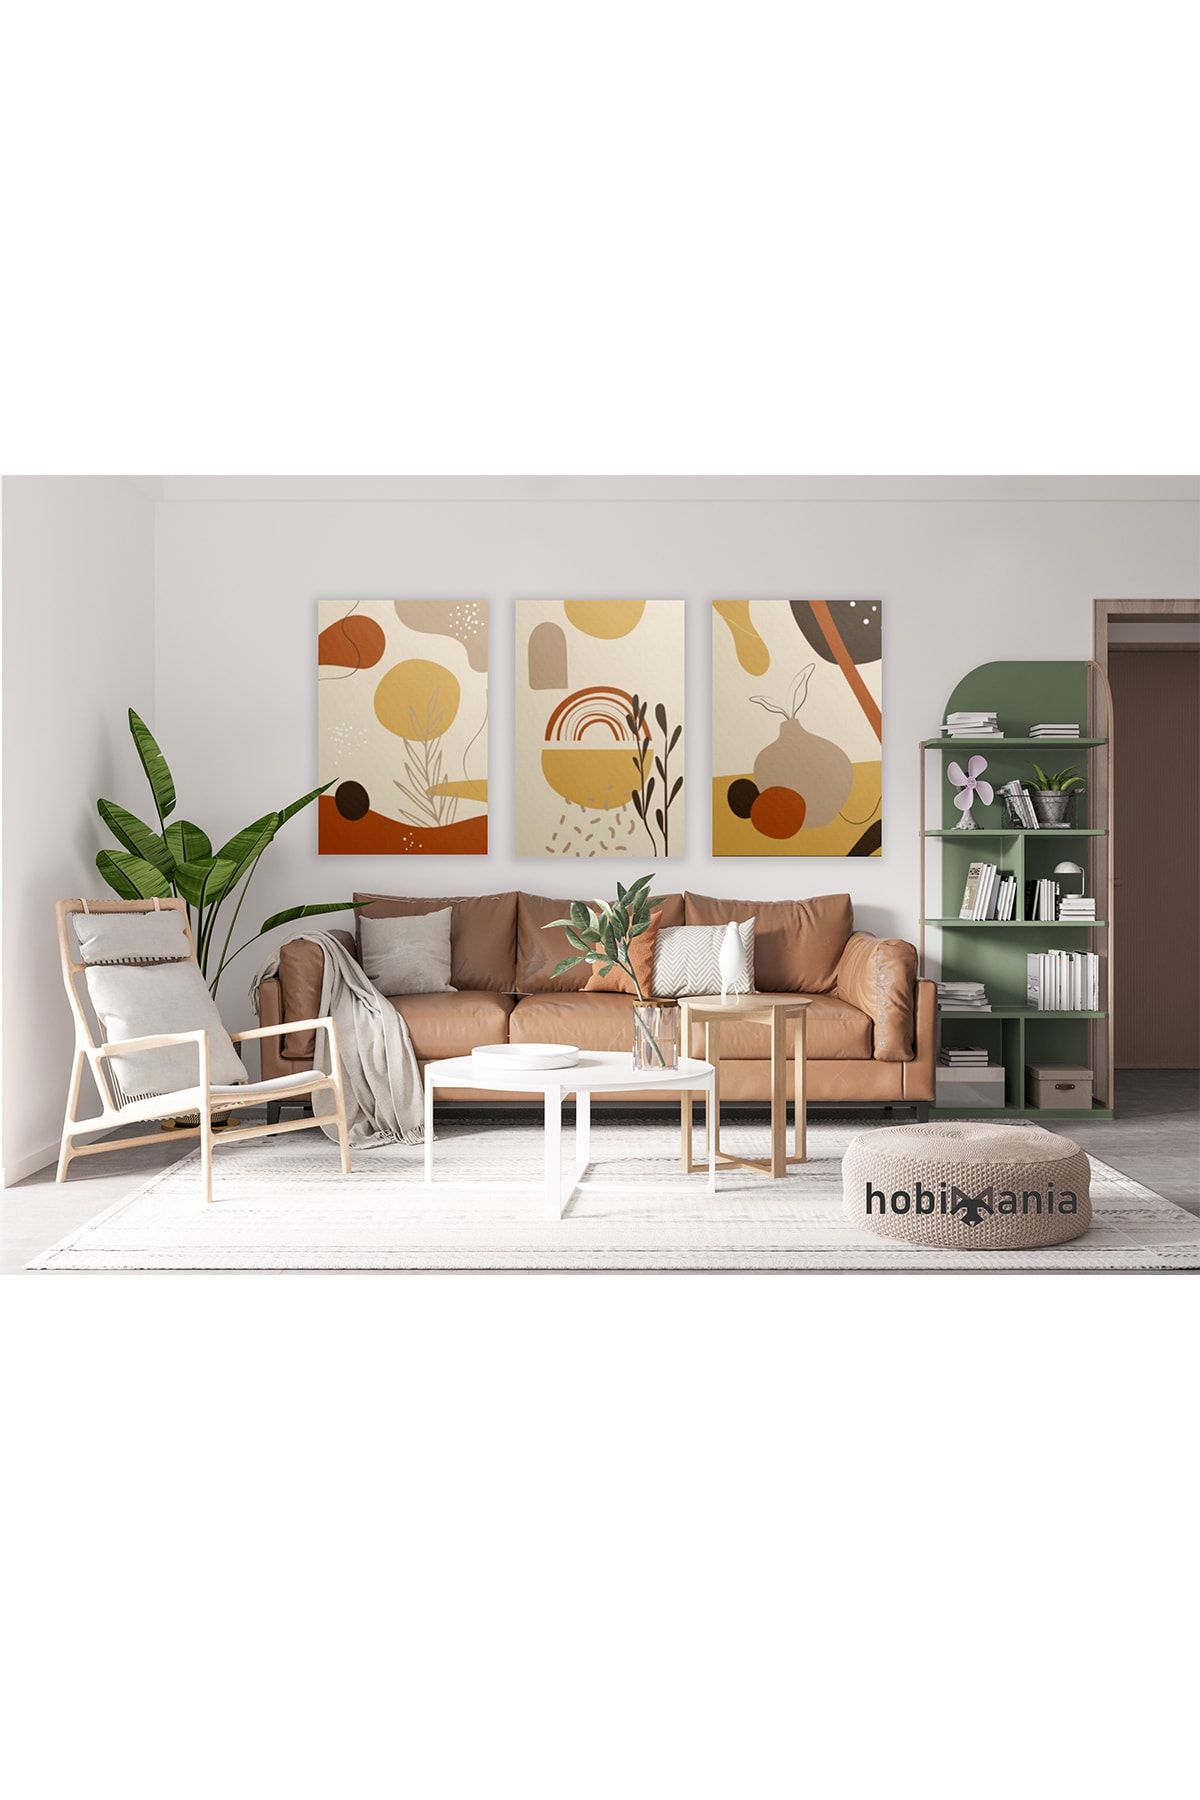 Hobimania Kanvas Tablo Soft Renklerde Modern Tuval Dekorasyon Moda Tablo Set 40x60 Cm